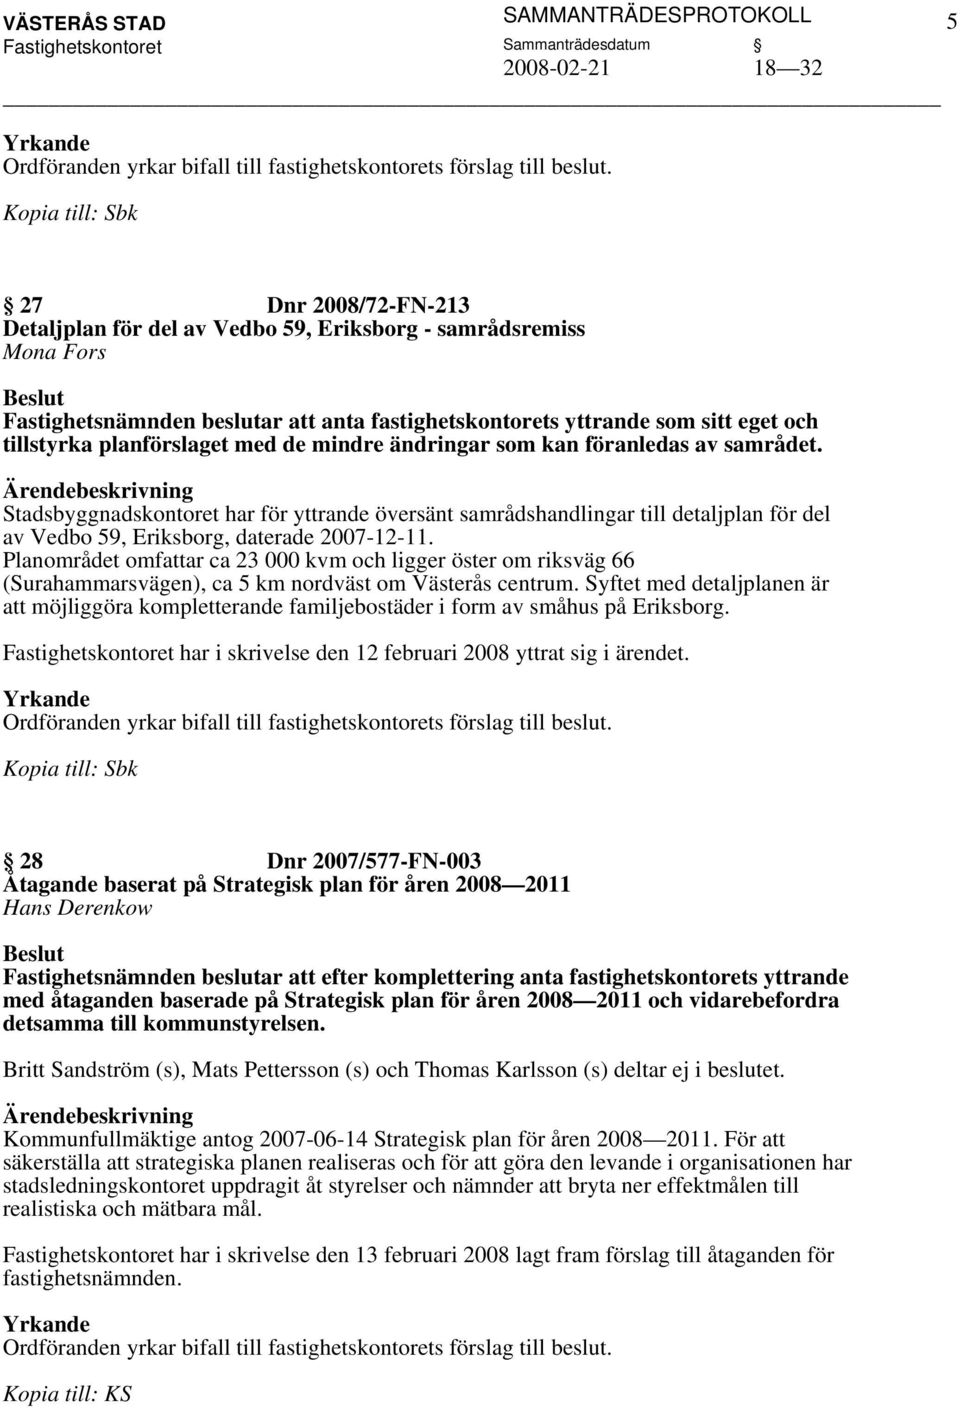 Stadsbyggnadskontoret har för yttrande översänt samrådshandlingar till detaljplan för del av Vedbo 59, Eriksborg, daterade 2007-12-11.